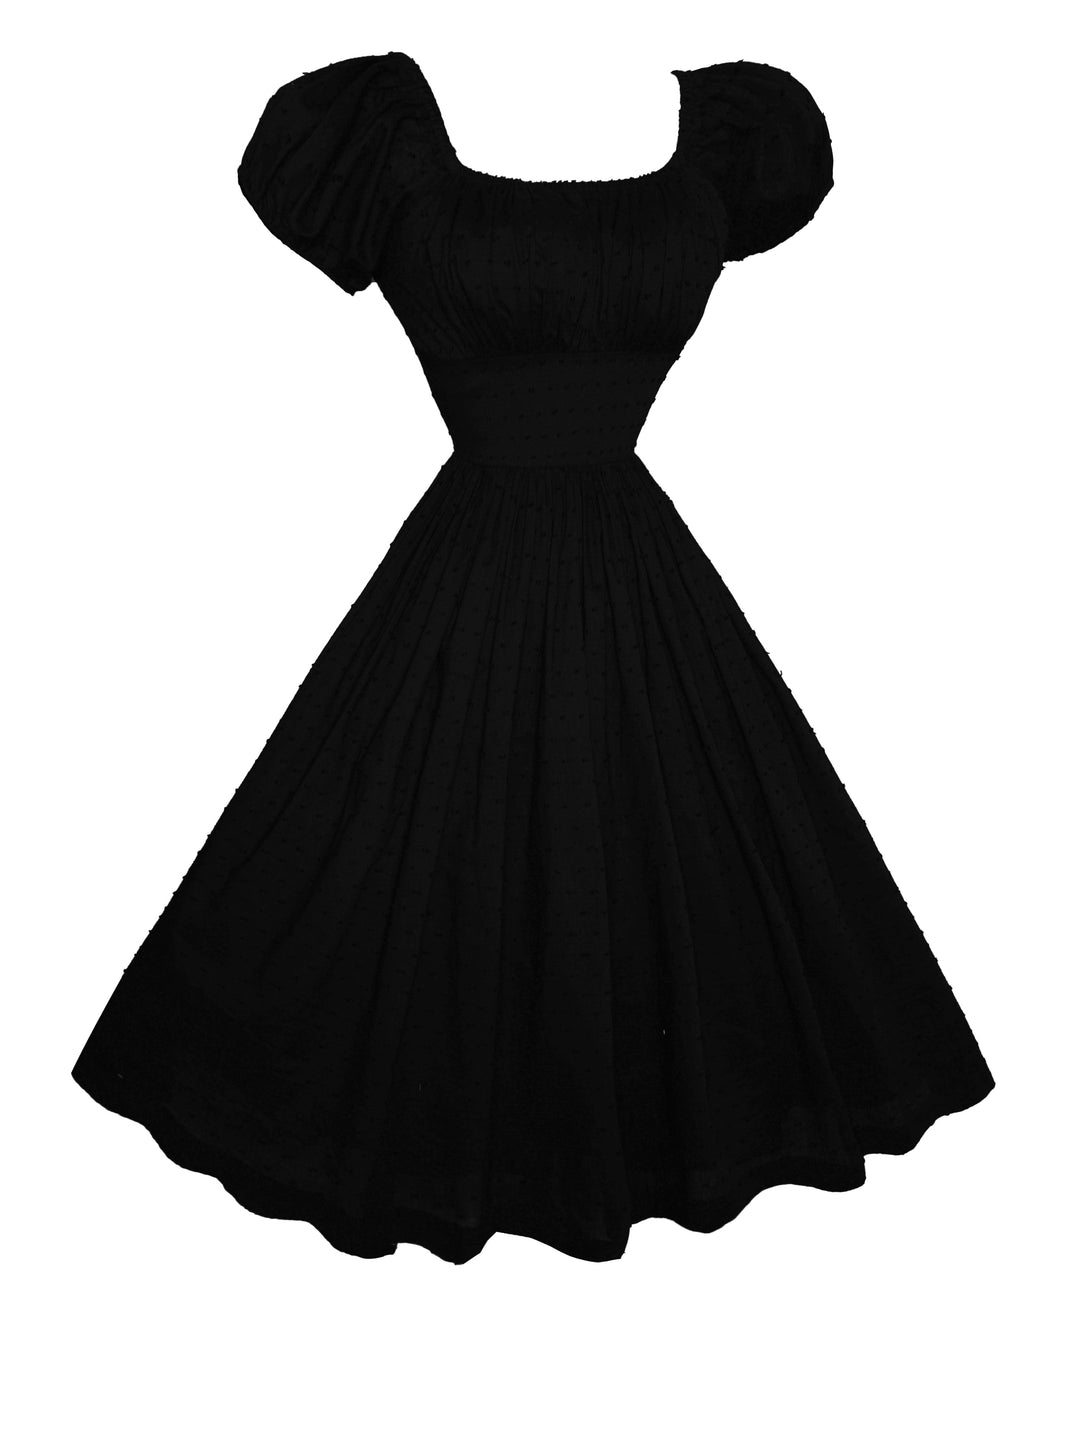 MTO - Loretta Dress in Black "Dotted Swiss"